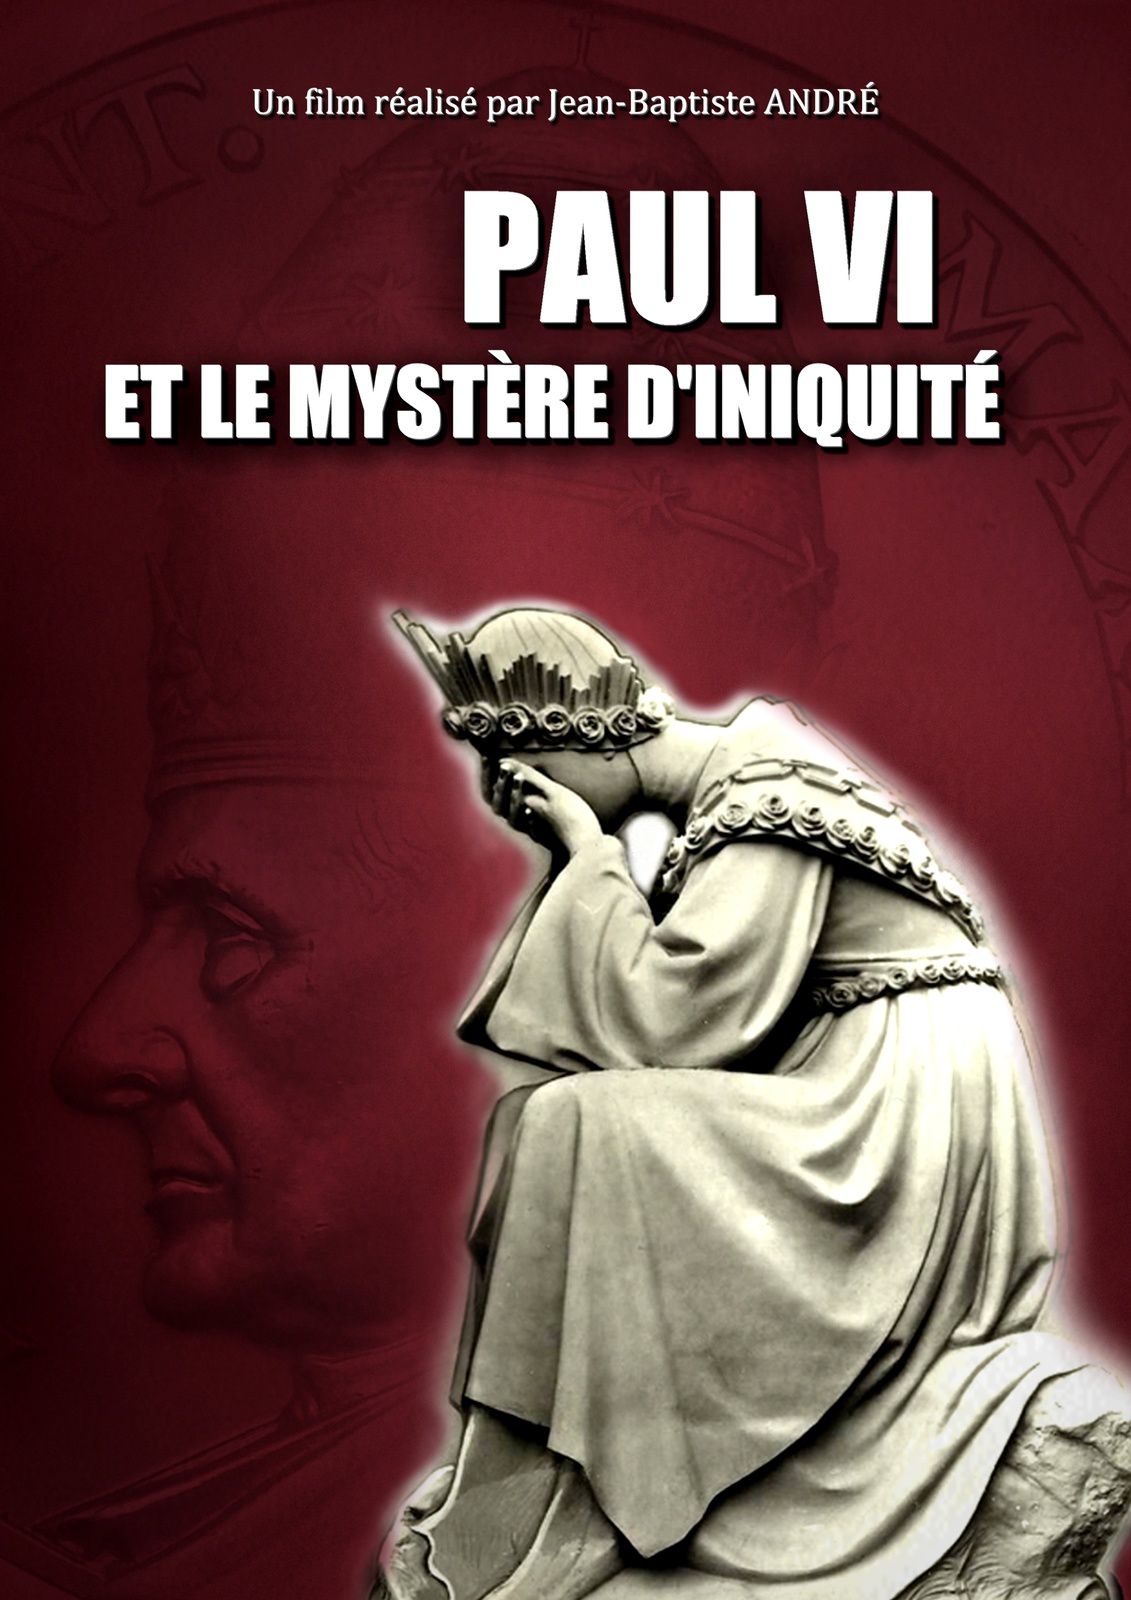 PAUL VI et le mystère d'iniquité